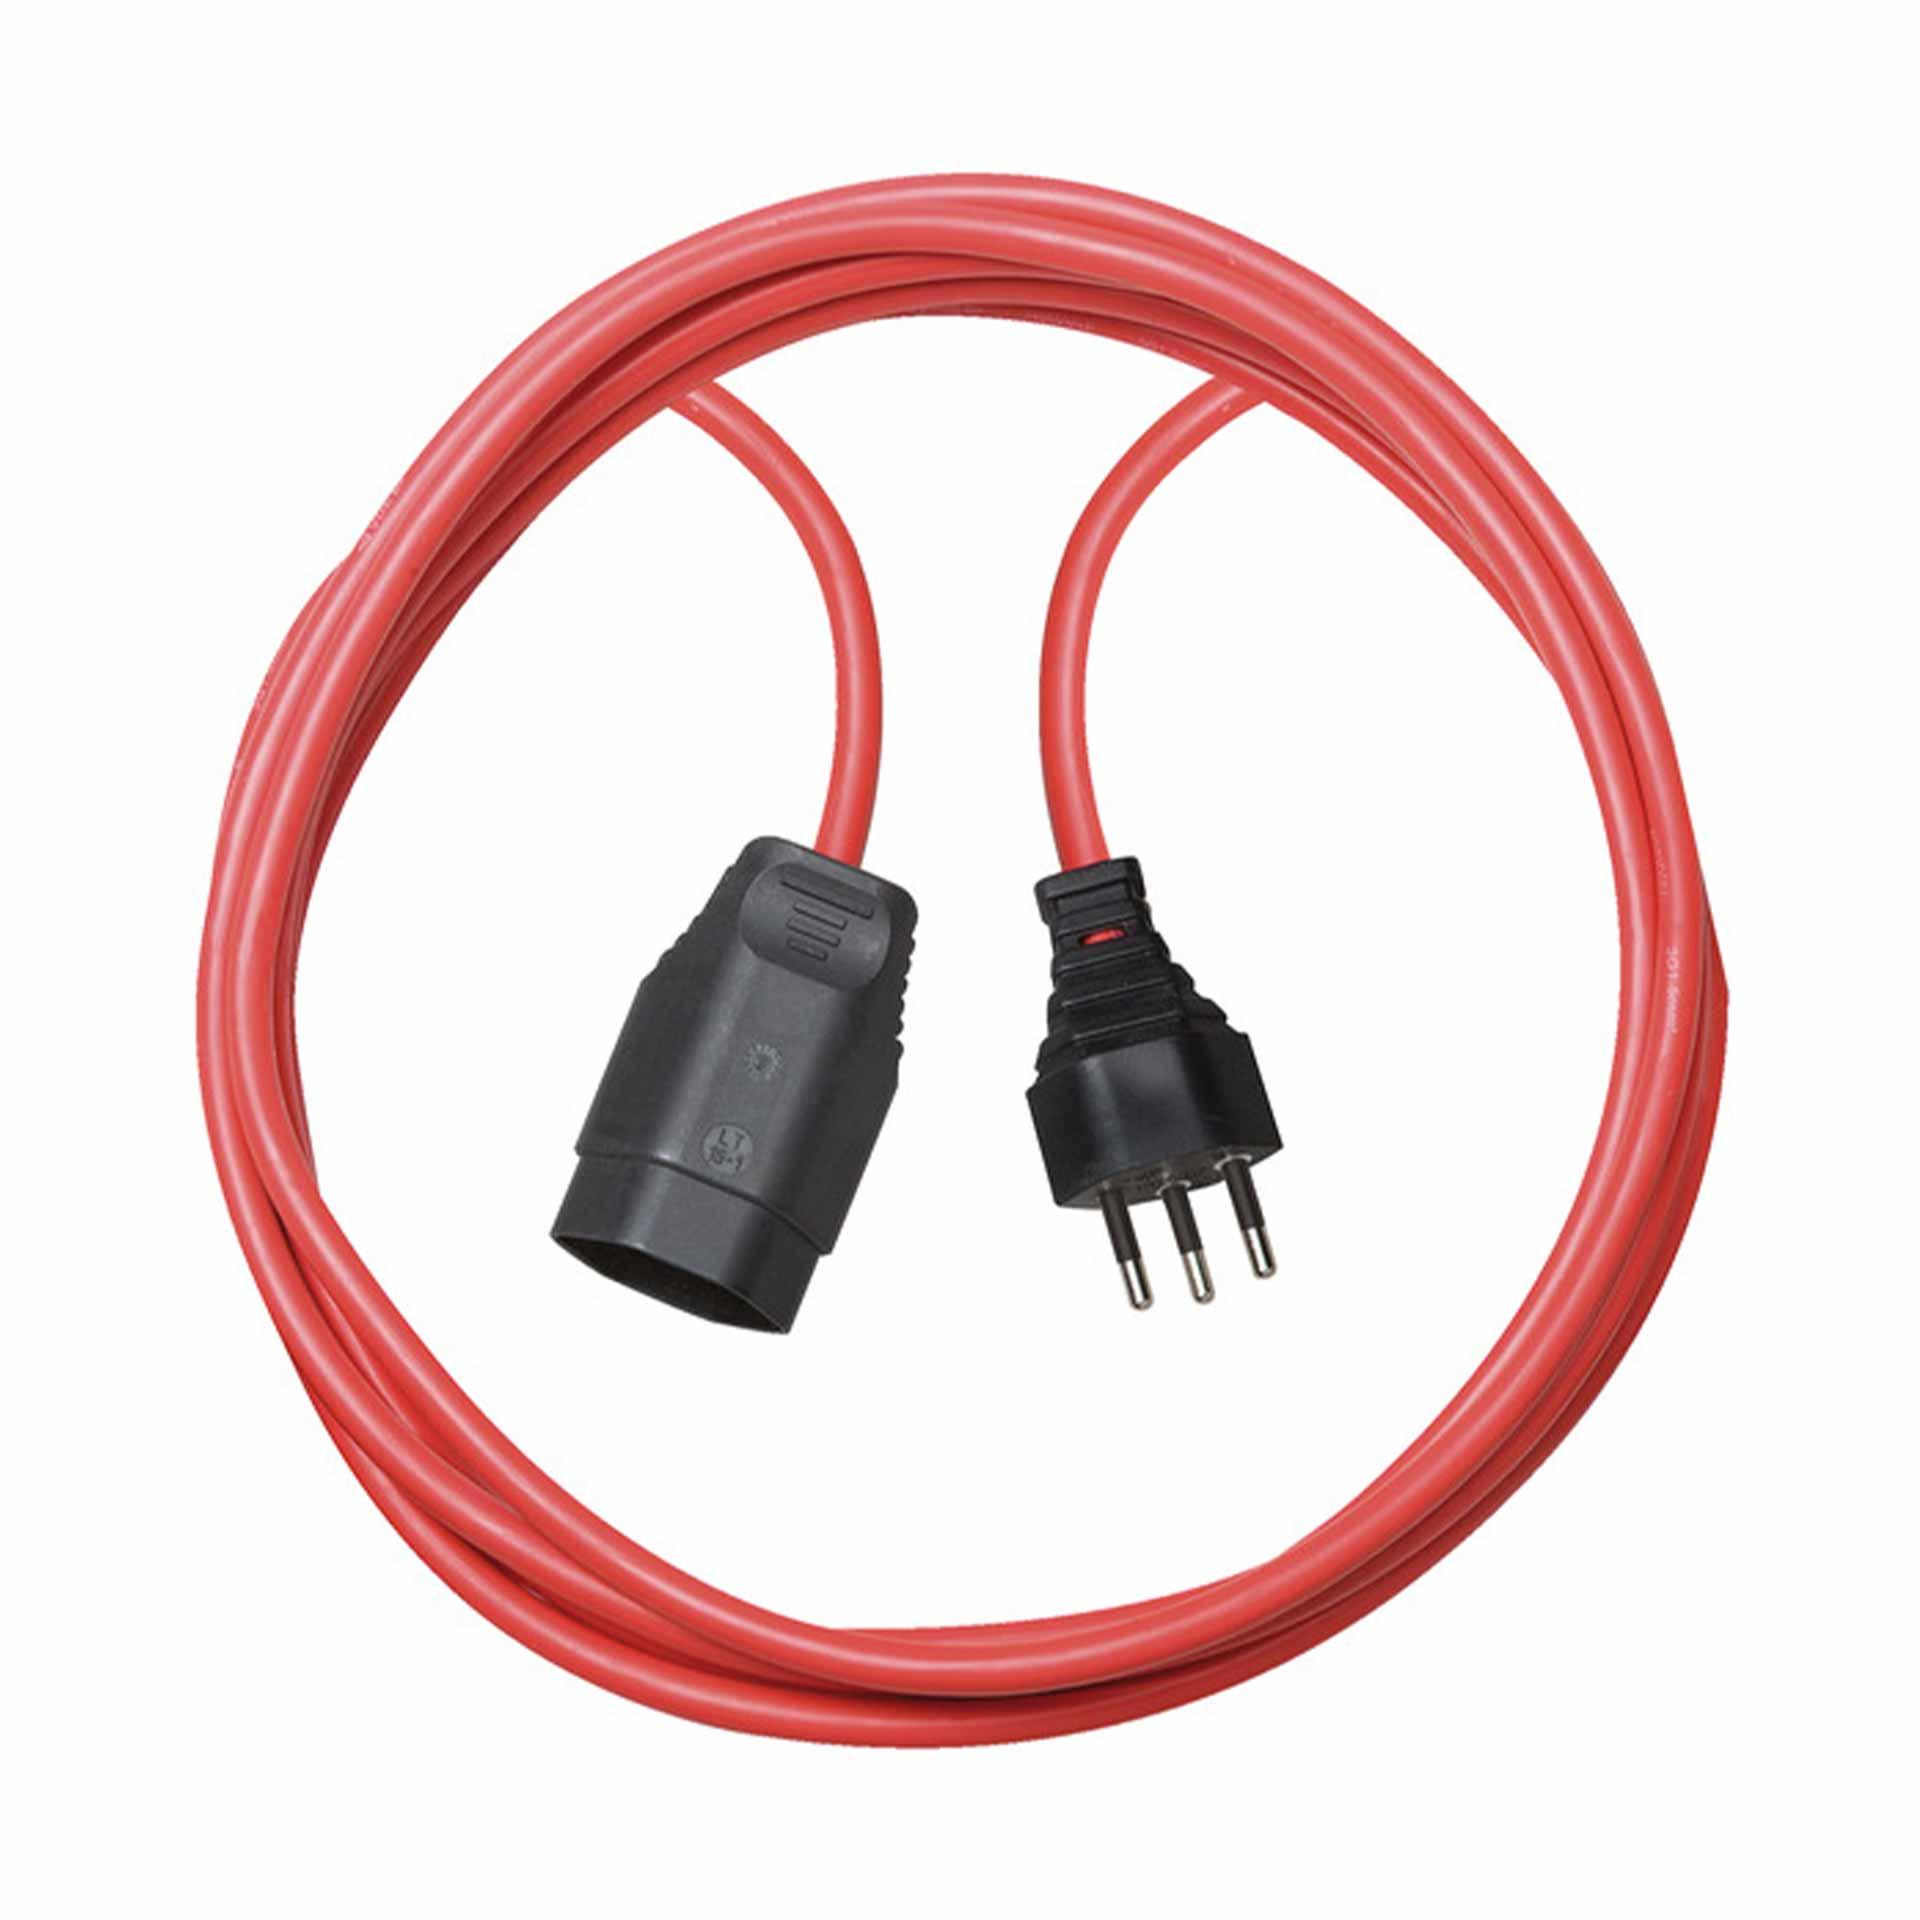 Cordon prolongateur en plastique de qualité 5m rouge H05VV-F 3G1,5 *CH*